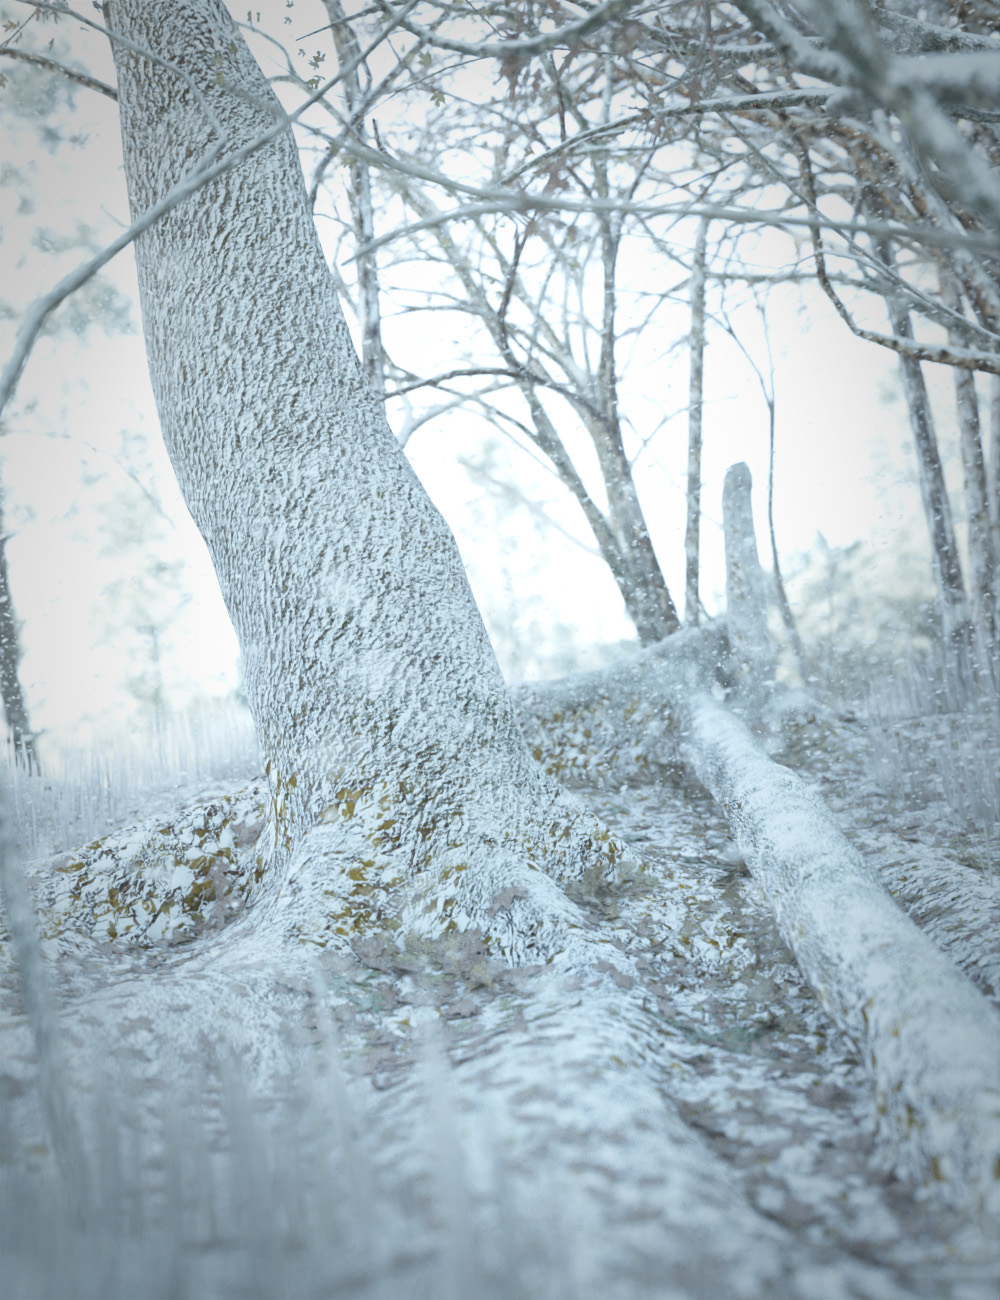 Fall Woods Vignette Winter Add-On by: KindredArts, 3D Models by Daz 3D